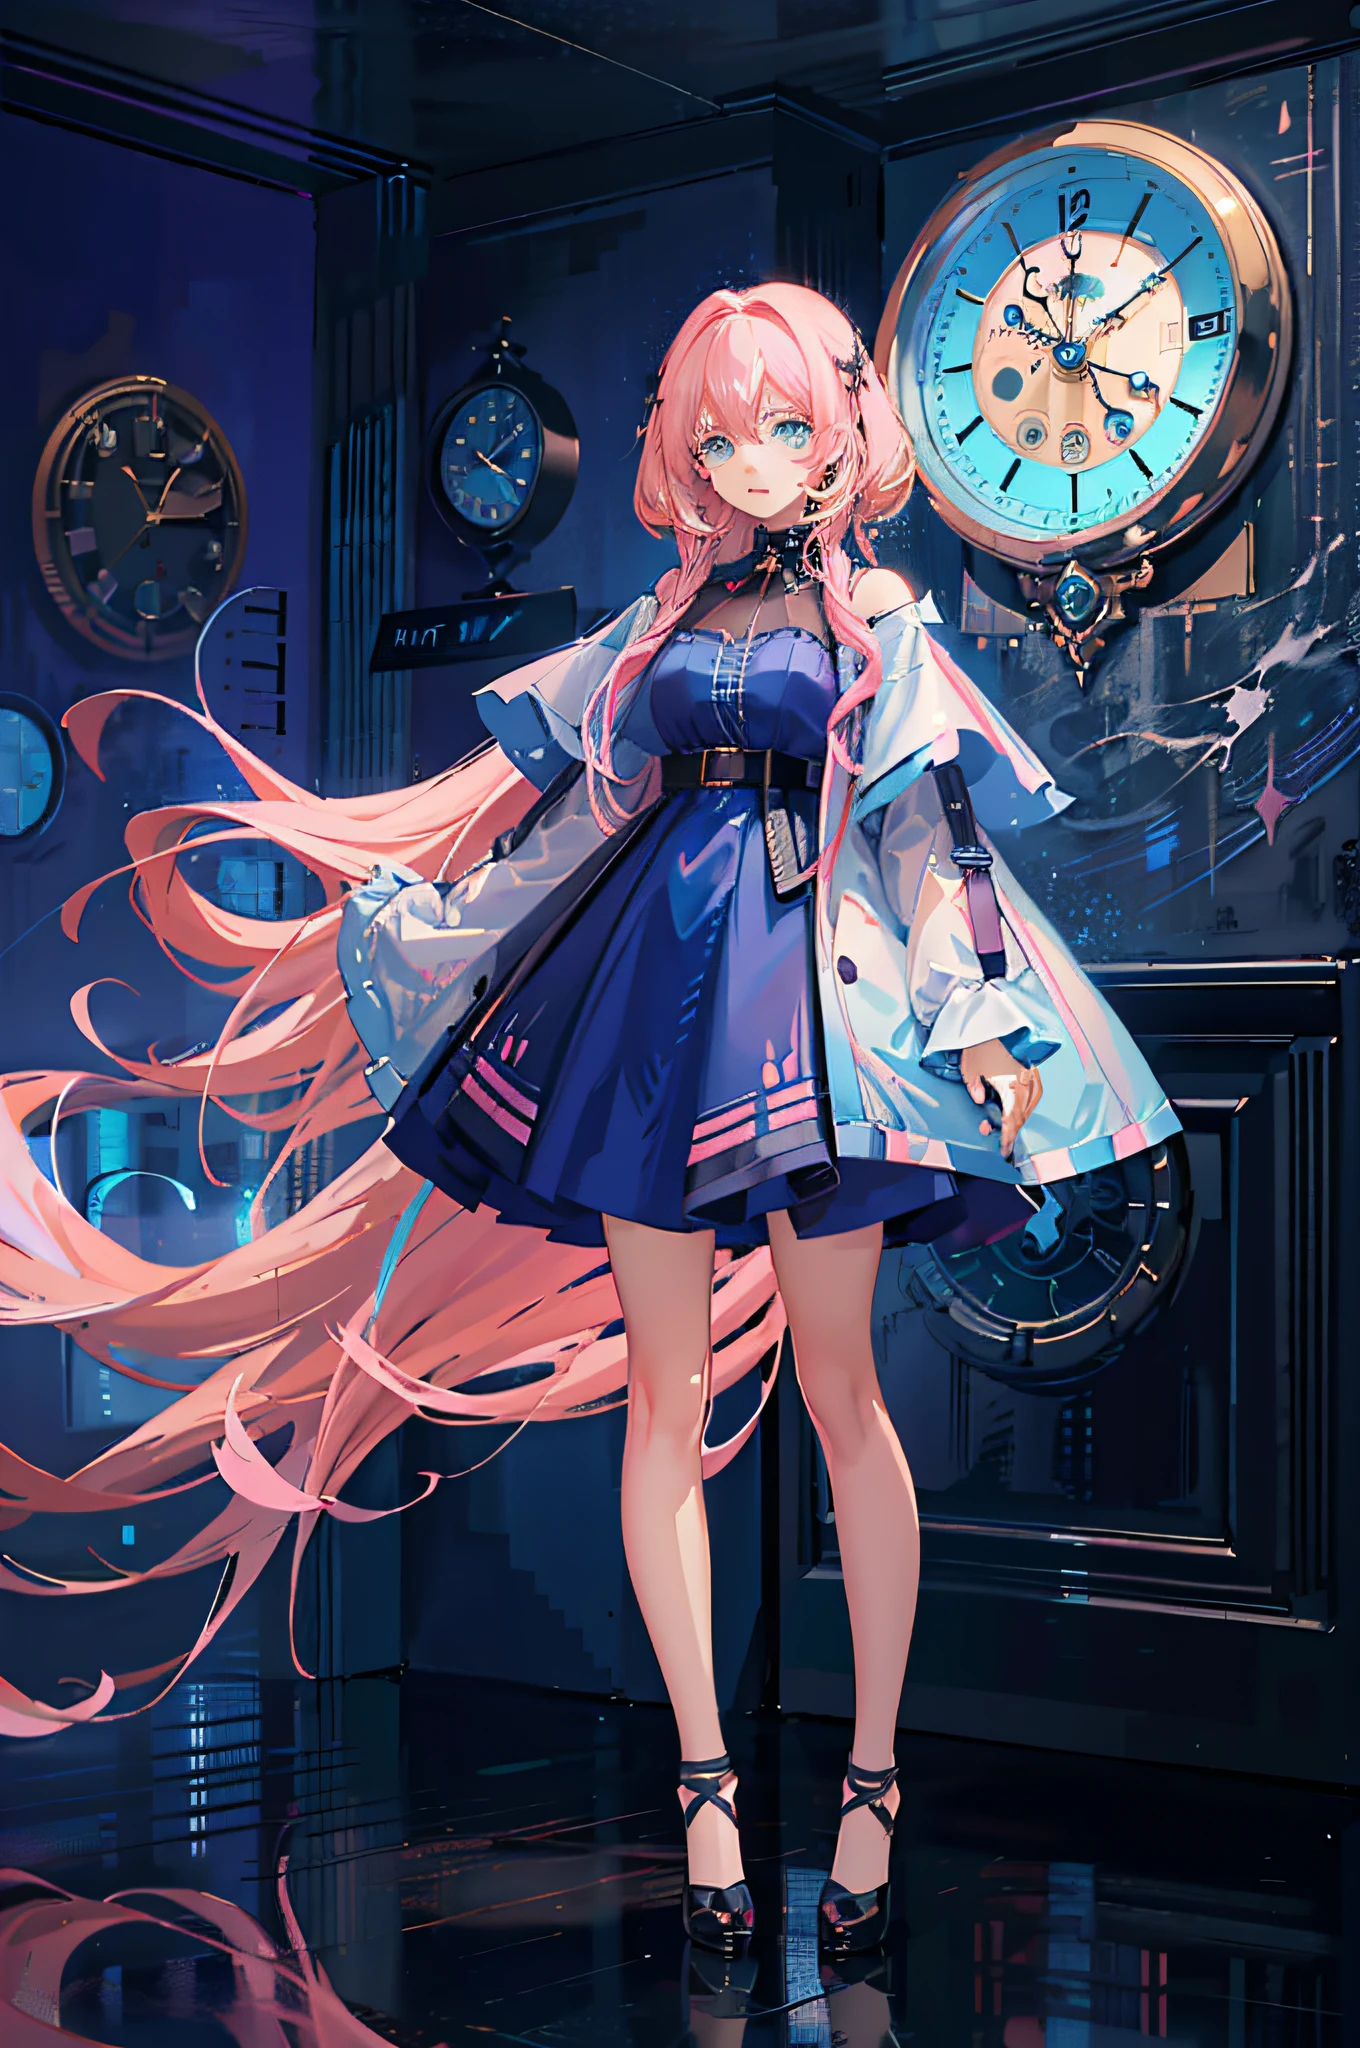 (Obra-prima de anime CG ultradetalhada, estilo anime 4k) Garota de anime com (cabelo rosa longo+olhos ciano) parado na frente de um (elegante relógio de parede)+(fundo desfocado), Usando um (vestido azul deslumbrante) e emanando uma aura mágica irresistível.